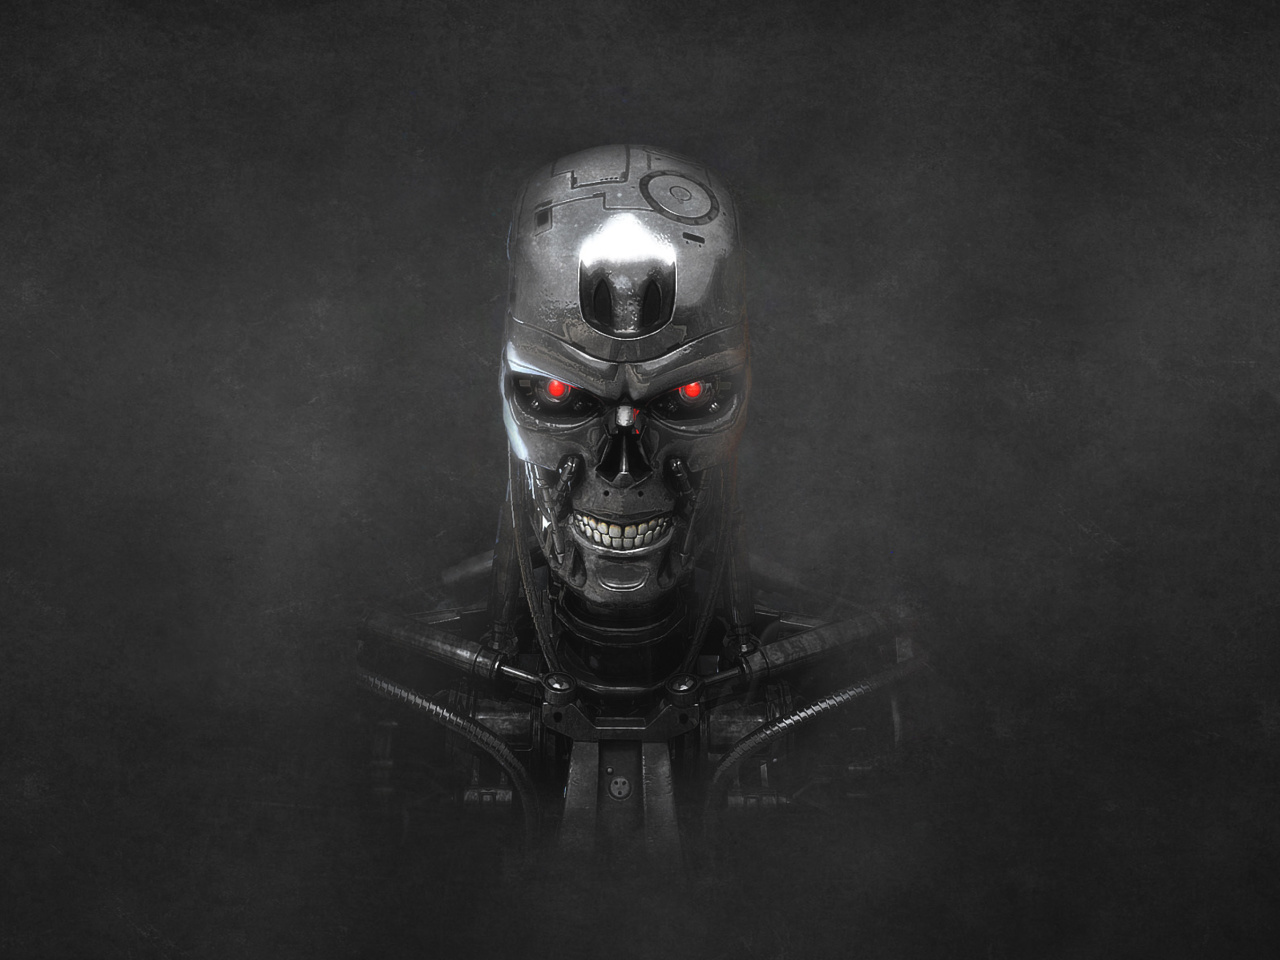 Sfondi Terminator Endoskull 1280x960